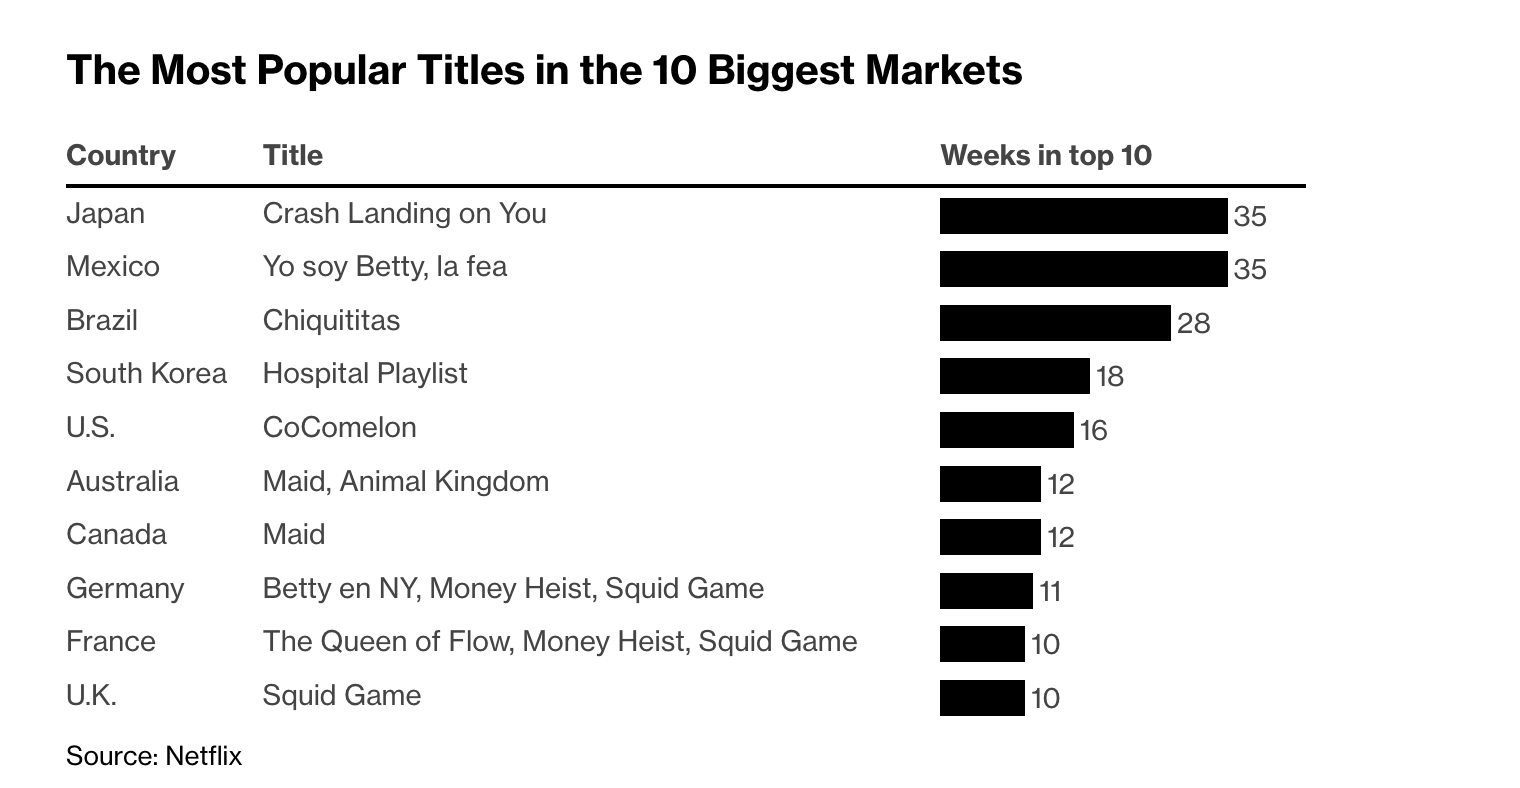 가장 큰 시장 10개에서의 가장 인기가 많았던 콘텐츠를 나타낸 표. 왼쪽부터 국가, 콘텐츠명, TOP 10에 포함되었던 주 수를 나타냄